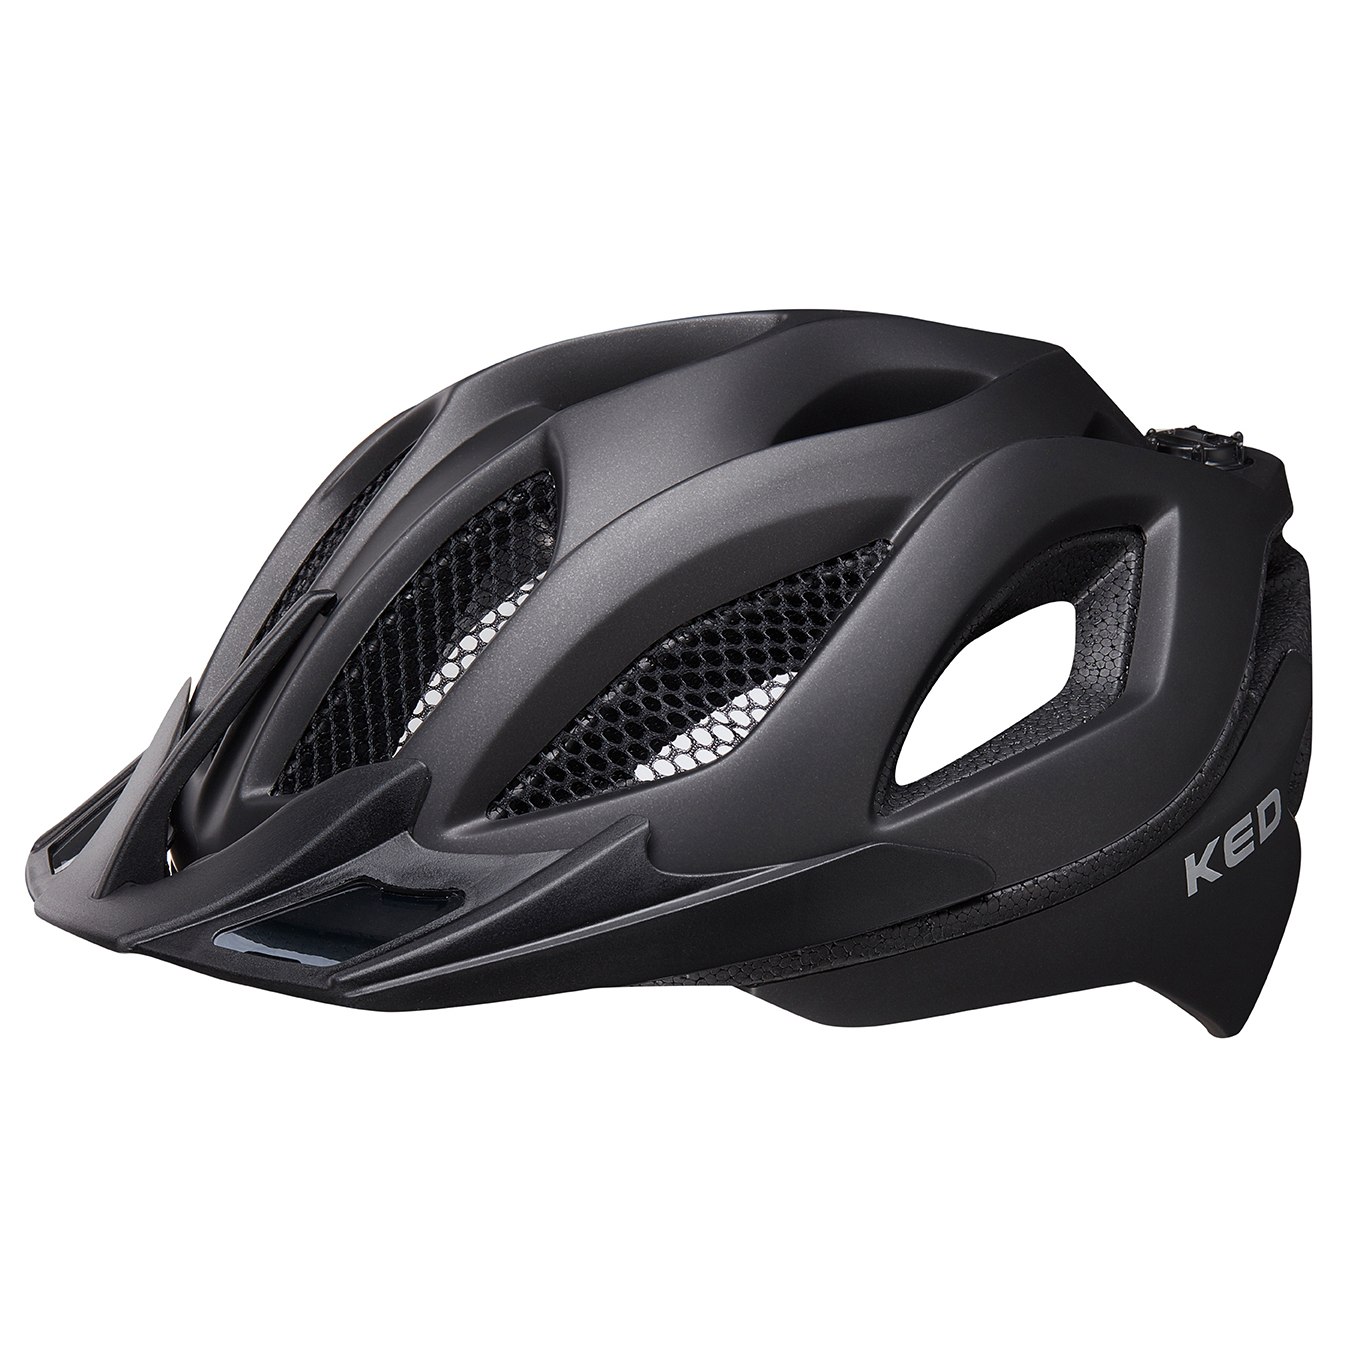 Image of KED Spiri II Helmet - black matt